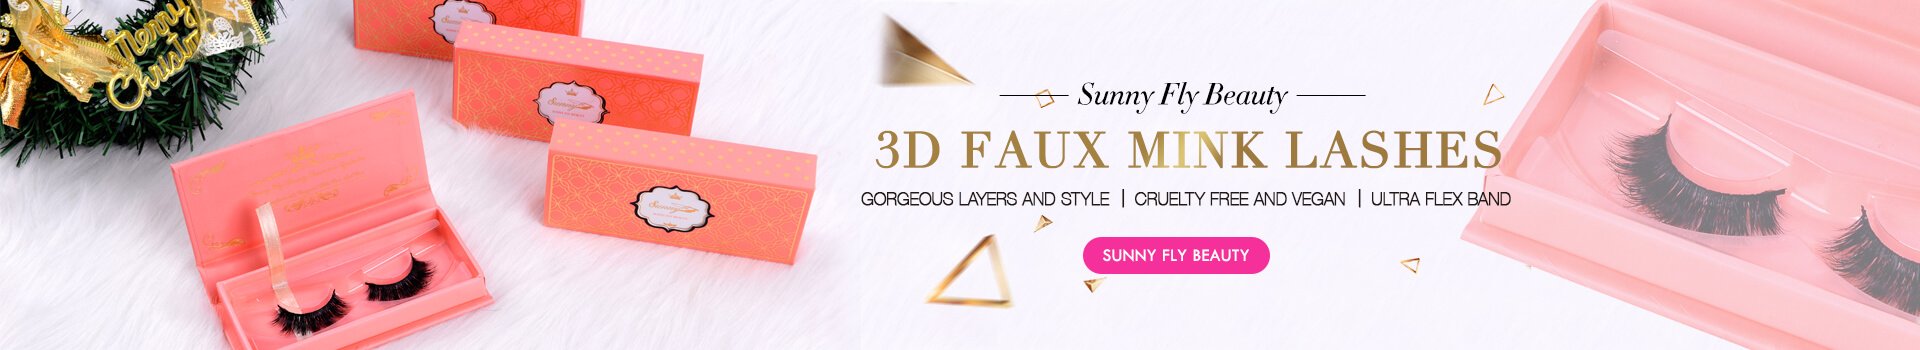 3D Faux Mink Lashes SD35